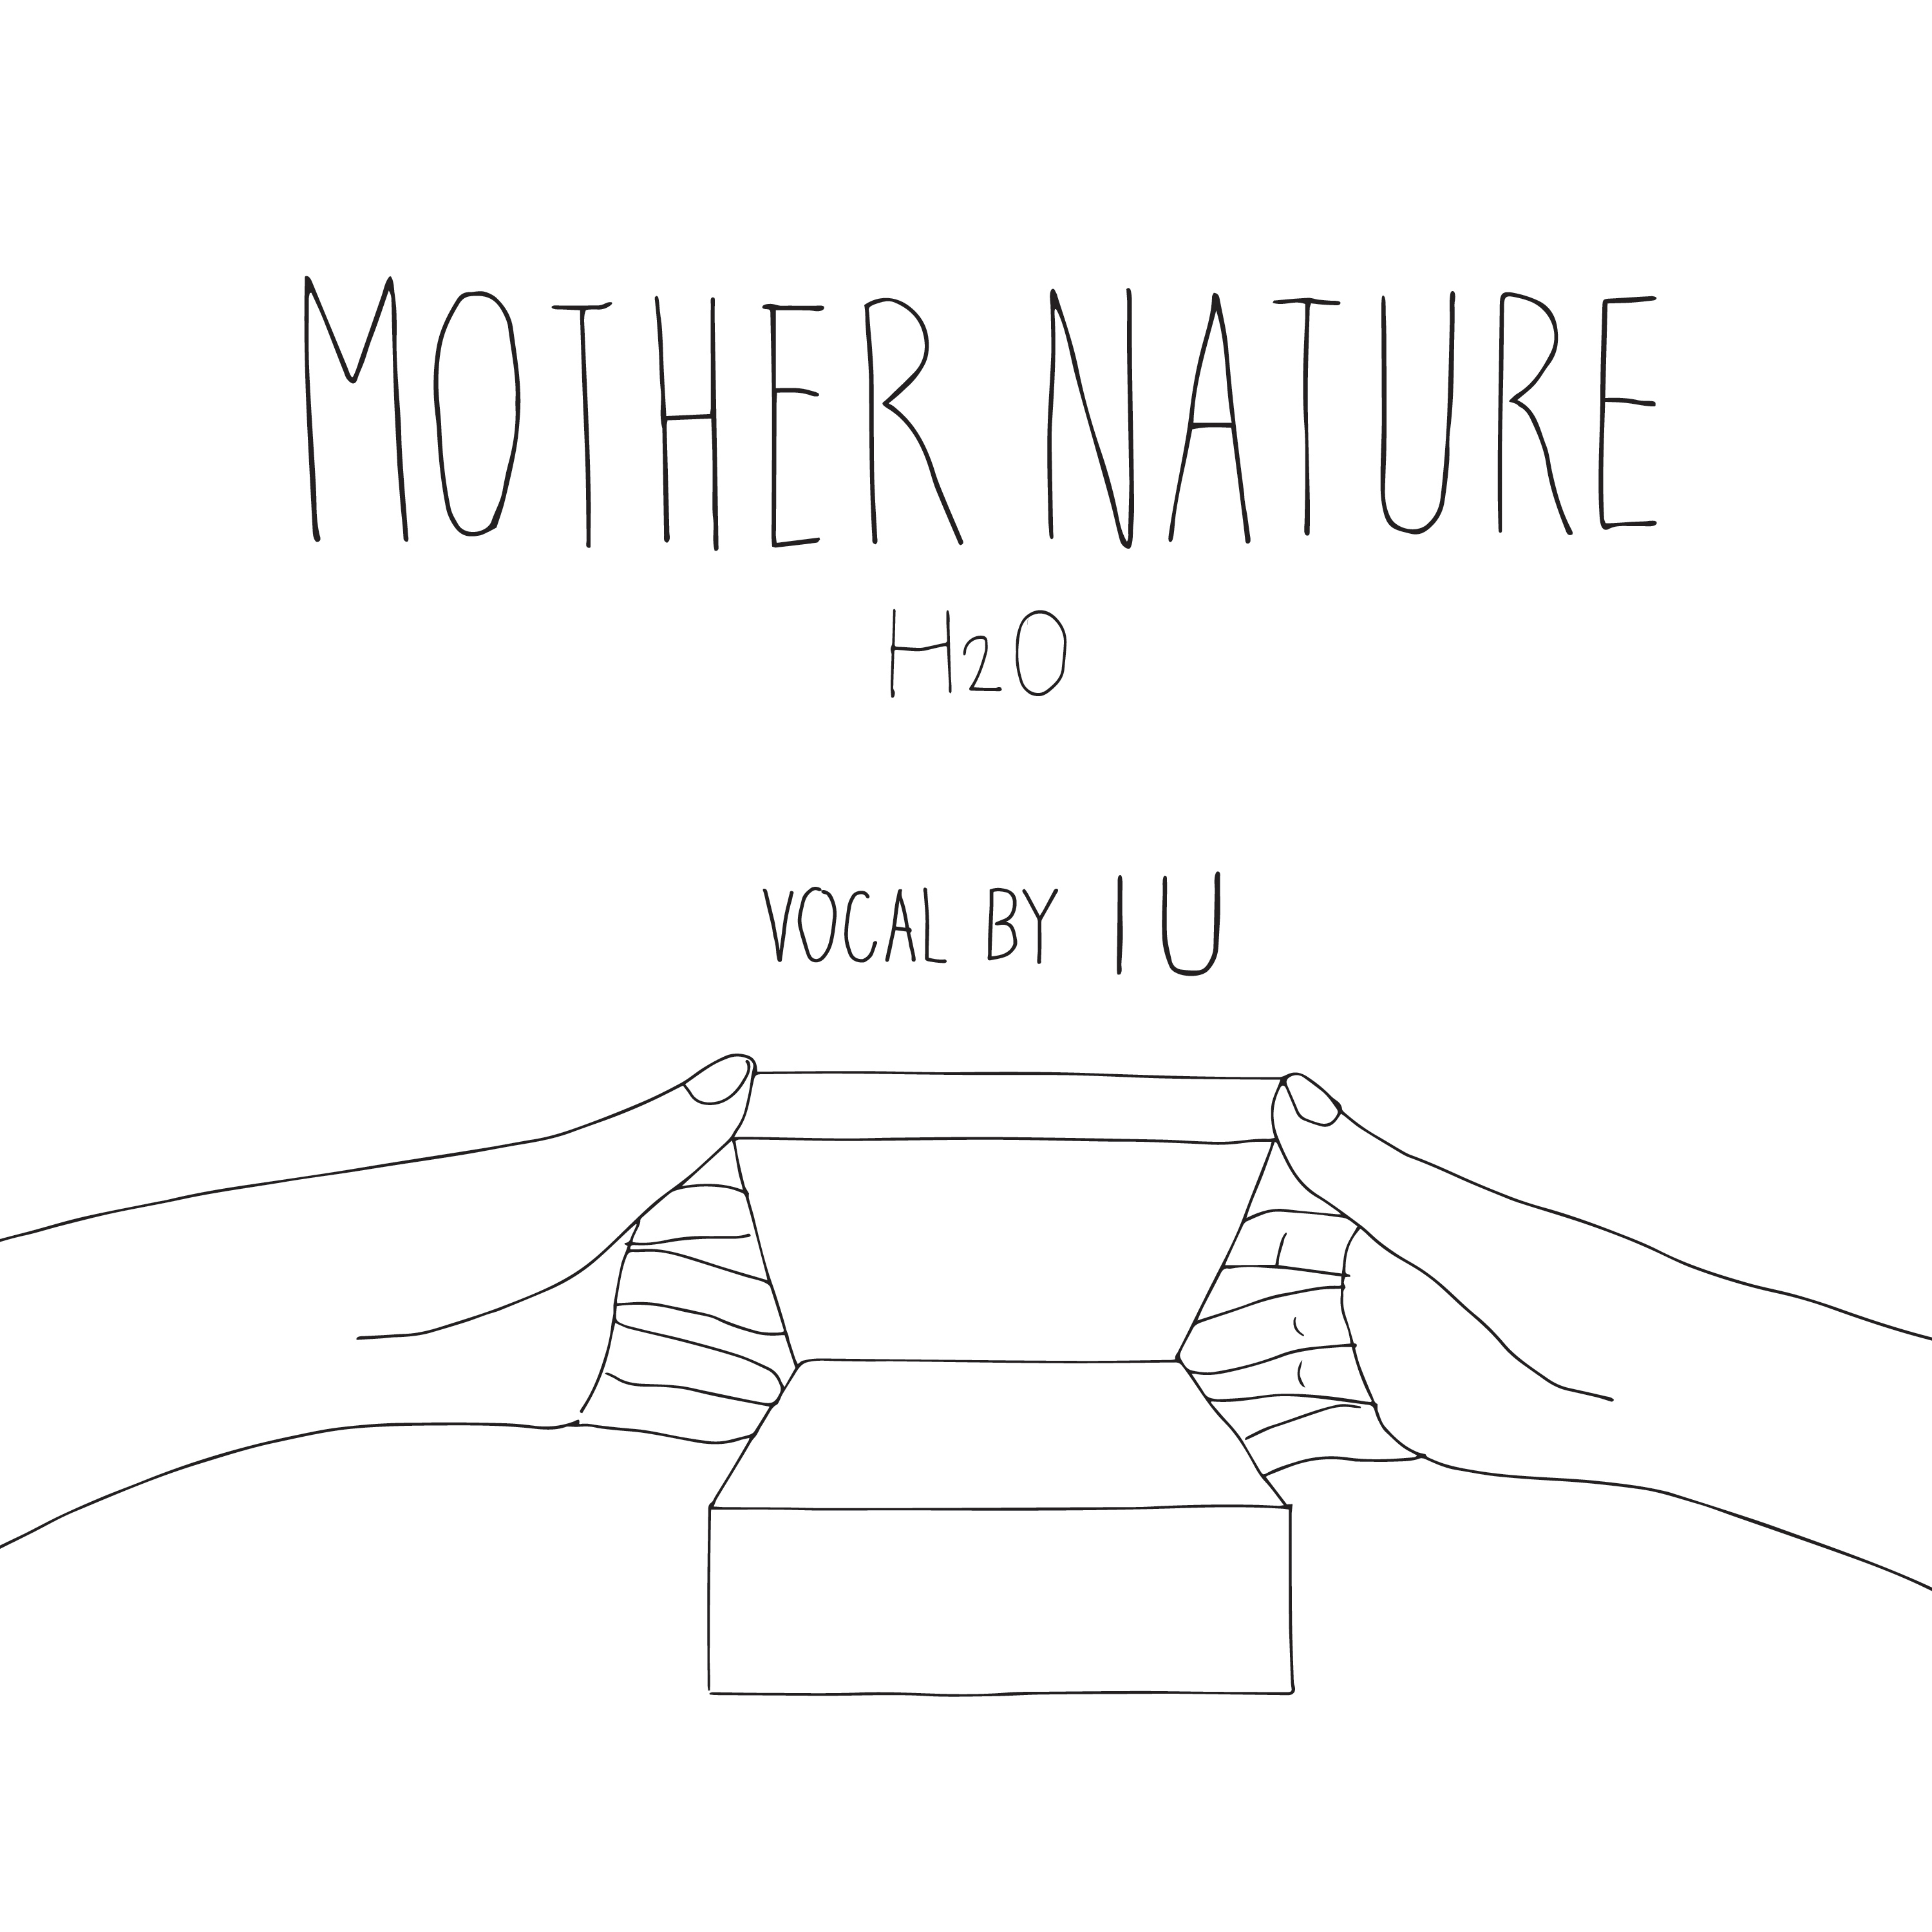 [影音] IU, Kang Seungwon - Mother Nature